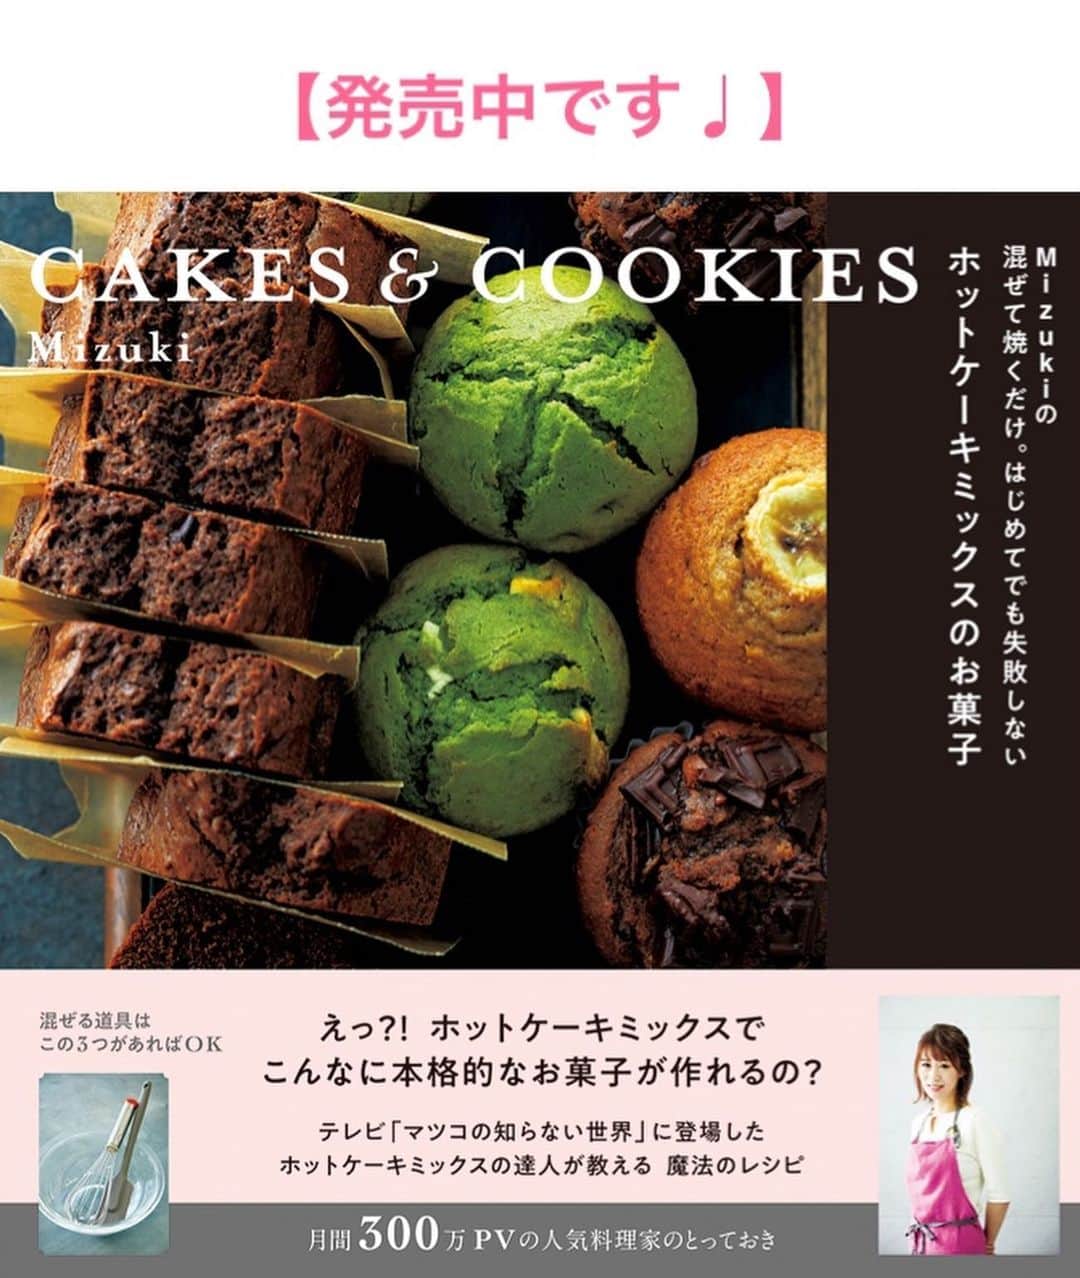 Mizuki【料理ブロガー・簡単レシピ】さんのインスタグラム写真 - (Mizuki【料理ブロガー・簡単レシピ】Instagram)「・﻿ 【レシピ】ーーーーーーーーーーー﻿ ♡レンジdeなすのキーマカレー♡﻿ ーーーーーーーーーーーーーーーー﻿ ﻿ ﻿ ﻿ おはようございます(*^^*)﻿ ﻿ 今日ご紹介させていただくのは﻿ レンジで一発！のキーマカレー☆﻿ 旬のなすをたっぷり加えて﻿ ヘルシーに仕上げました♡﻿ 辛くはないので﻿ お子さんも一緒に食べられますよ〜♩﻿ ﻿ 作り方は超簡単(*´艸`)﻿ 材料混ぜてレンチンするだけ！﻿ 火を使わずたった7分で﻿ ちゃんと美味しく仕上がります♩﻿ ランチやお弁当にも使えるので﻿ よかったらお試し下さいね(*^^*)﻿ ﻿ ﻿ ﻿ ーーーーーーーーーーーーーーーーーーーー﻿ 【2人分】﻿ 合びき肉...150g﻿ 玉ねぎ...1/4個﻿ なす...2本(150g)﻿ ●水...50ml﻿ ●ケチャップ...大2﻿ ●ウスターソース・薄力粉...各大1﻿ ●カレー粉...小2﻿ ●コンソメ・砂糖...各小1/3﻿ ごはん・(好みで)卵黄...各2人分﻿ ﻿ 1.玉ねぎはみじん切りにする。なすは1cm角に切り、水に3分晒して水気を切る。﻿ 2.耐熱ボウルにひき肉、玉ねぎ、●を入れて菜箸で混ぜる。なすをのせてふんわりラップし、600Wのレンジで7分加熱する。﻿ 3.よく混ぜてごはんにかけ、卵黄をのせる。﻿ ーーーーーーーーーーーーーーーーーーーー﻿ ﻿ ﻿ ﻿ 《ポイント》﻿ ♦︎約20cmの耐熱ボウルを使用しています♩﻿ ♦︎合挽き肉の代わりに豚ひき肉や鶏ひき肉でも作れます♩﻿ ♦︎辛さはカレー粉の量で調節できます♩レシピ分量だと辛くはありません♩﻿ ﻿ ﻿ ﻿ ﻿ ﻿ ﻿ ＿＿＿＿＿＿＿＿＿＿＿＿＿＿＿＿＿﻿ 🎀6刷重版しました🎀﻿ 混ぜて焼くだけ。はじめてでも失敗しない！﻿ 【#ホットケーキミックスのお菓子 】﻿ ﻿ 一冊まるっとホケミスイーツ♩﻿ 普段のおやつから﻿ 特別な日にも使えるレシピを﻿ この一冊に詰め込みました(*^^*)﻿ ホットケーキミックスを使えば﻿ 簡単に本格的なお菓子が作れますよ♡﻿ ＿＿＿＿＿＿＿＿＿＿＿＿＿＿＿＿＿﻿ ﻿ ﻿ ﻿ ＿＿＿＿＿＿＿＿＿＿＿＿＿＿＿＿＿＿＿﻿ 📕6刷重版しました📕﻿ 簡単・時短！ 毎日のごはんがラクになる﻿ ✨🦋 【 #Mizukiの今どき和食 】🦋✨﻿ ＿＿＿＿＿＿＿＿＿＿＿＿＿＿＿＿＿＿＿﻿ なるべく少ない材料で﻿ 手間も時間も省きながら﻿ 簡単にできるおいしい和食レシピ♩﻿ 簡単に失敗なくマスターできる一冊で﻿ もっと気軽に、カジュアルに﻿ 和食を楽しんで下さいね(*^^*)﻿ ＿＿＿＿＿＿＿＿＿＿＿＿＿＿＿＿＿＿＿﻿ ﻿ ⭐️ストーリー、ハイライト、プロフ画面に﻿ 本のURLを貼らせていただいております♩﻿ →(@mizuki_31cafe )﻿ ﻿ ﻿ ﻿ ﻿ ﻿ #なす#ひき肉#レンジ#キーマカレー#カレー#7分#お弁当#Mizuki#簡単レシピ#時短レシピ#節約レシピ#料理#レシピ#フーディーテーブル#マカロニメイト#おうちごはん#デリスタグラマー#料理好きな人と繋がりたい#おうちごはん#写真好きな人と繋がりたい#お菓子作りならコッタlover#foodpic#cooking#recipe#lin_stagrammer#foodporn#yummy#レンジキーマカレーm」7月19日 7時09分 - mizuki_31cafe